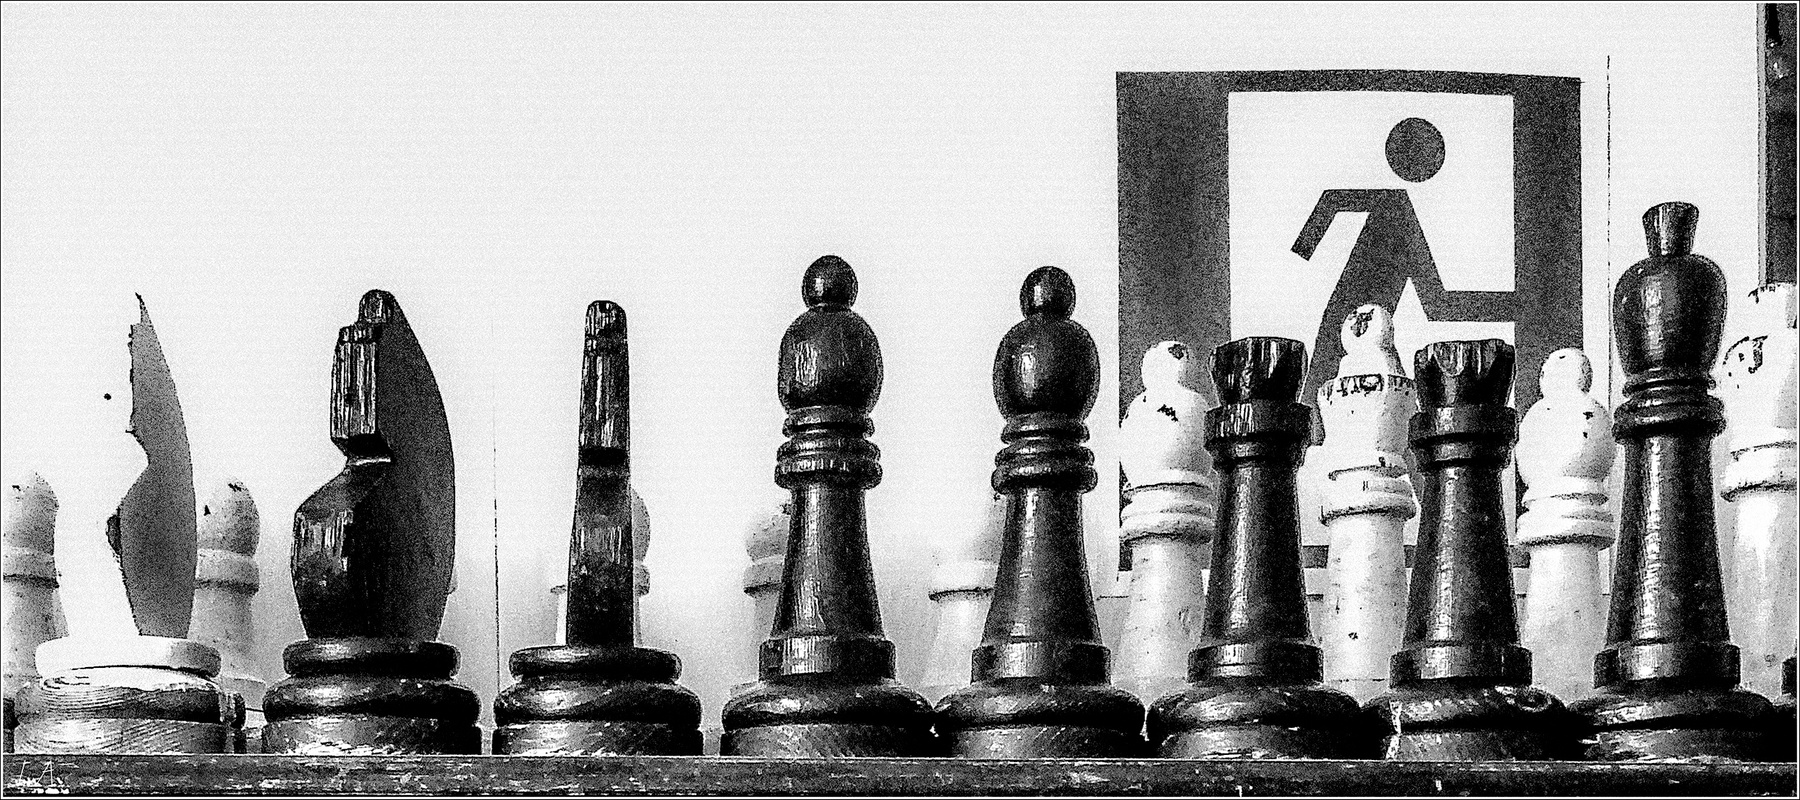 *Постаревшие шахматы* фотография путешествие дом отдыха предметы шахматы фигуры остальное Фото.Сайт Светлана Мамакина Lihgra Adventure